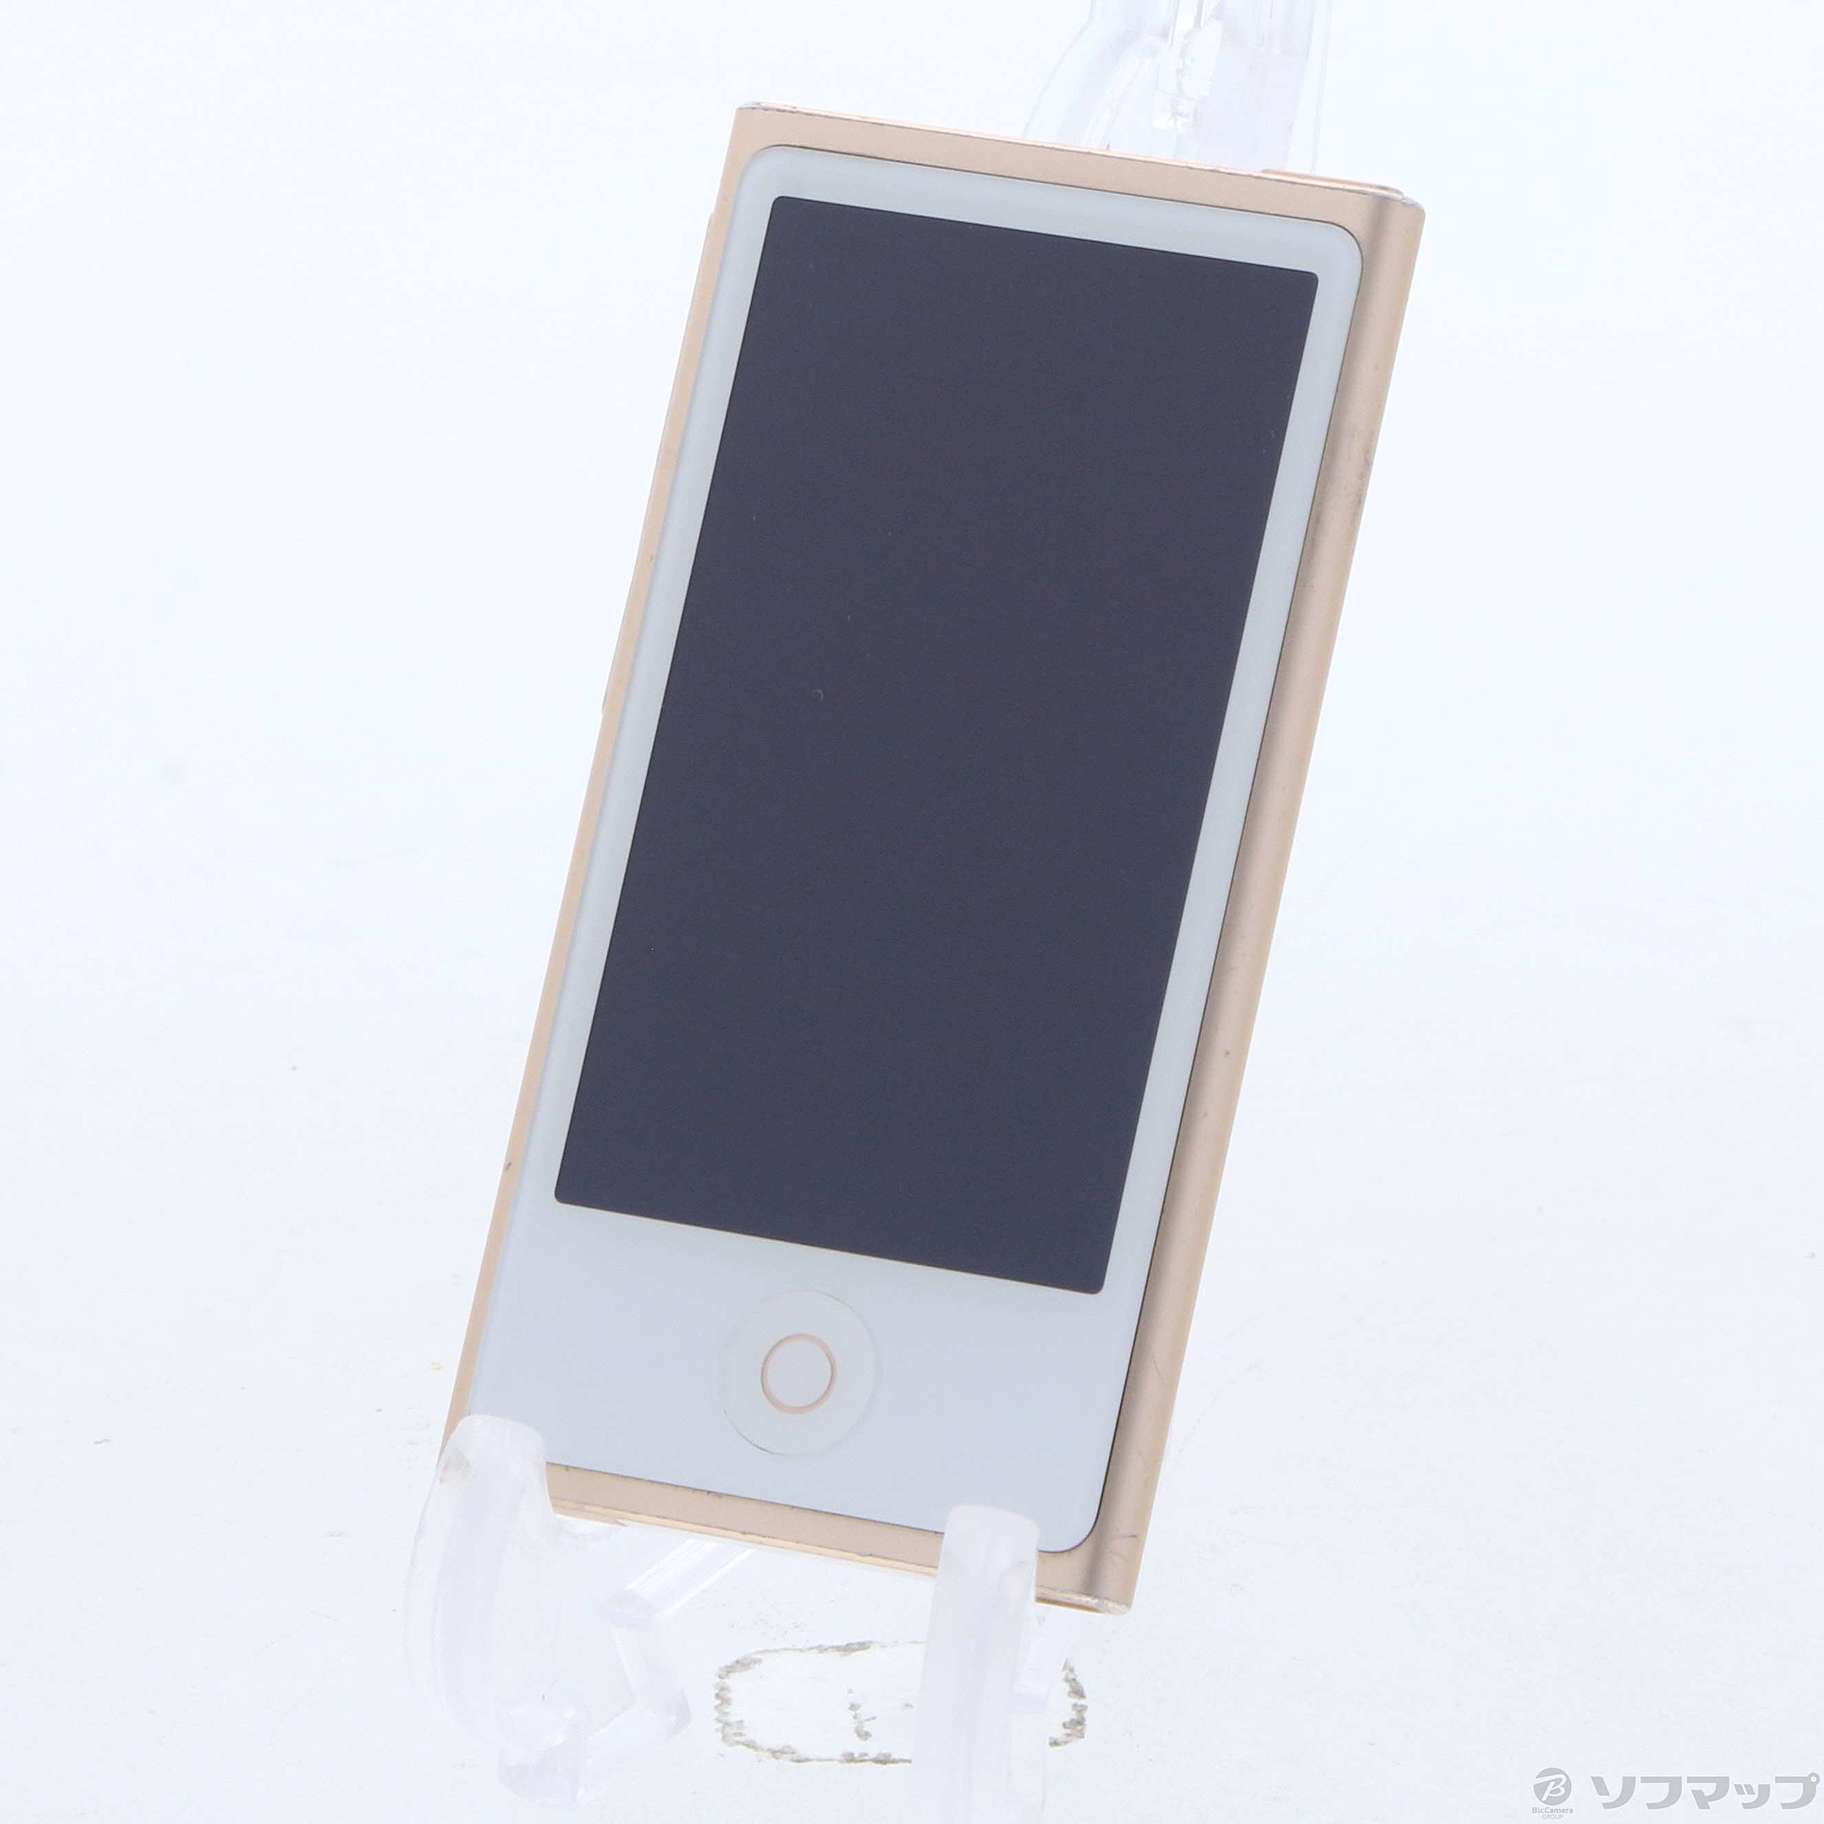 【週末SALE】iPod nano 第7世代 16G ゴールド